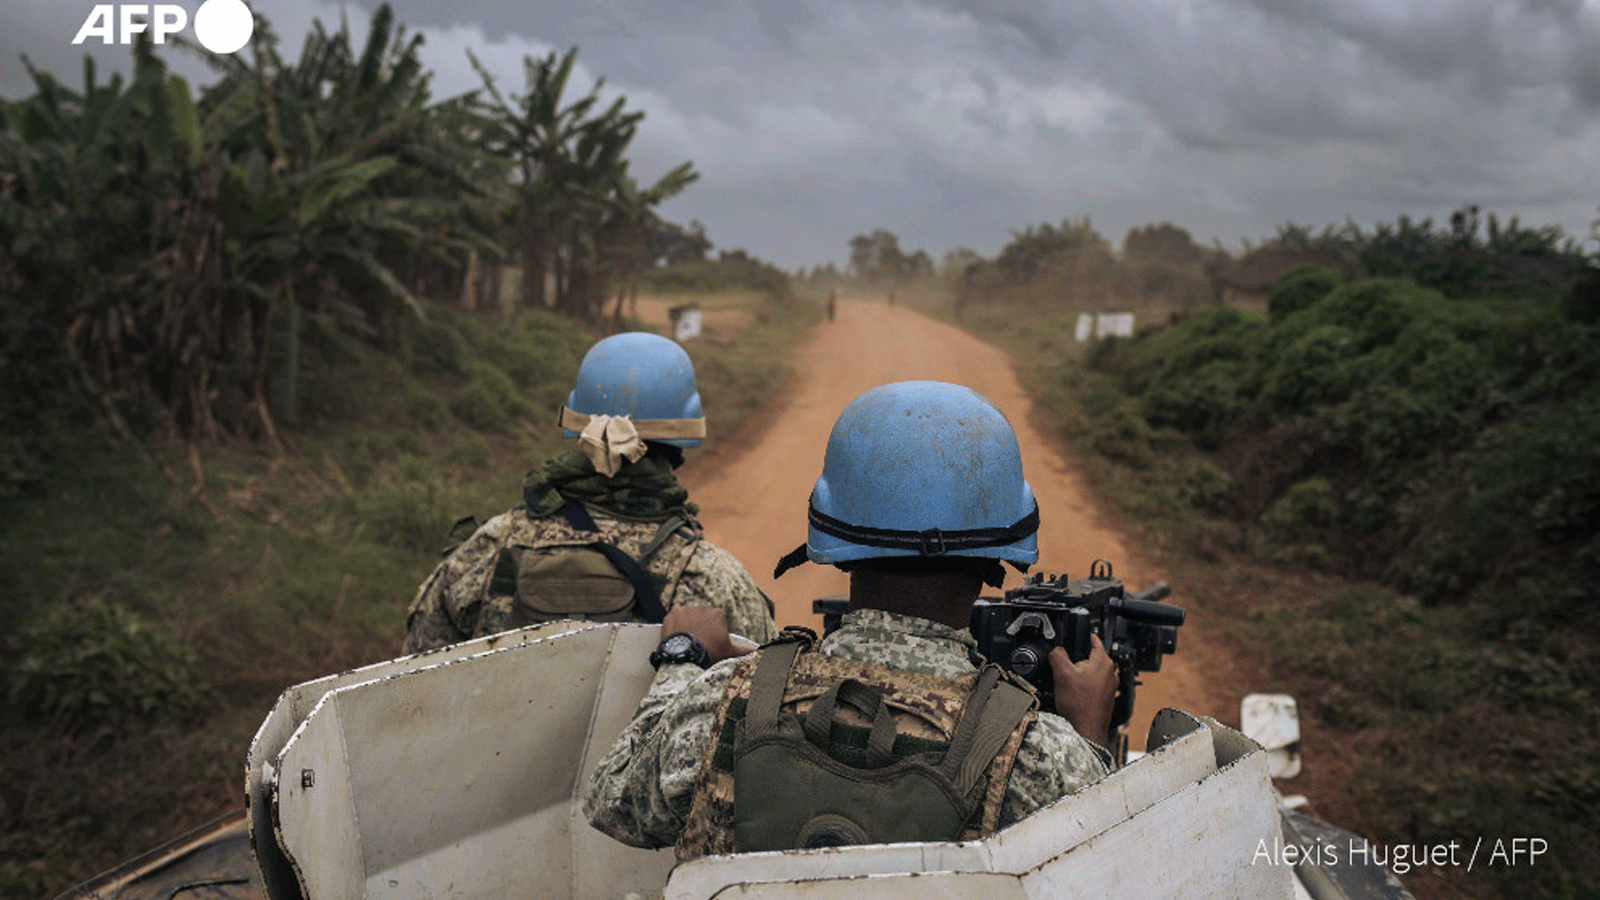 دورية تابعة لبعثة منظمة الأمم المتحدة لتحقيق الاستقرار في جمهورية الكونغو الديمقراطية في مقاطعة إيتوري